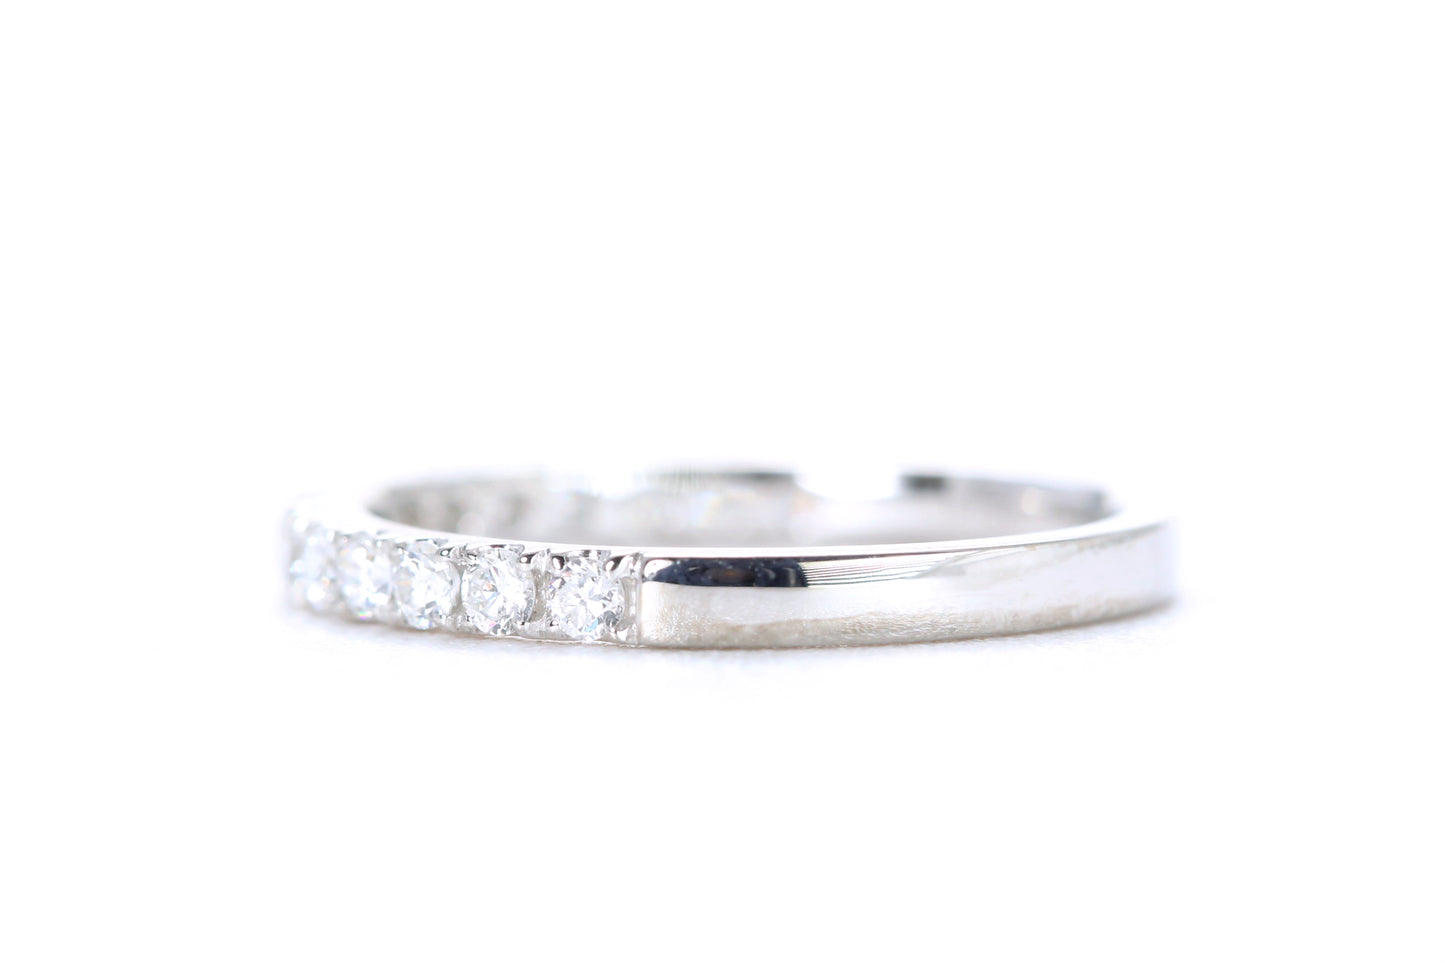 Micro Pavé Diamond Ring 1/2 Carat in Platinum